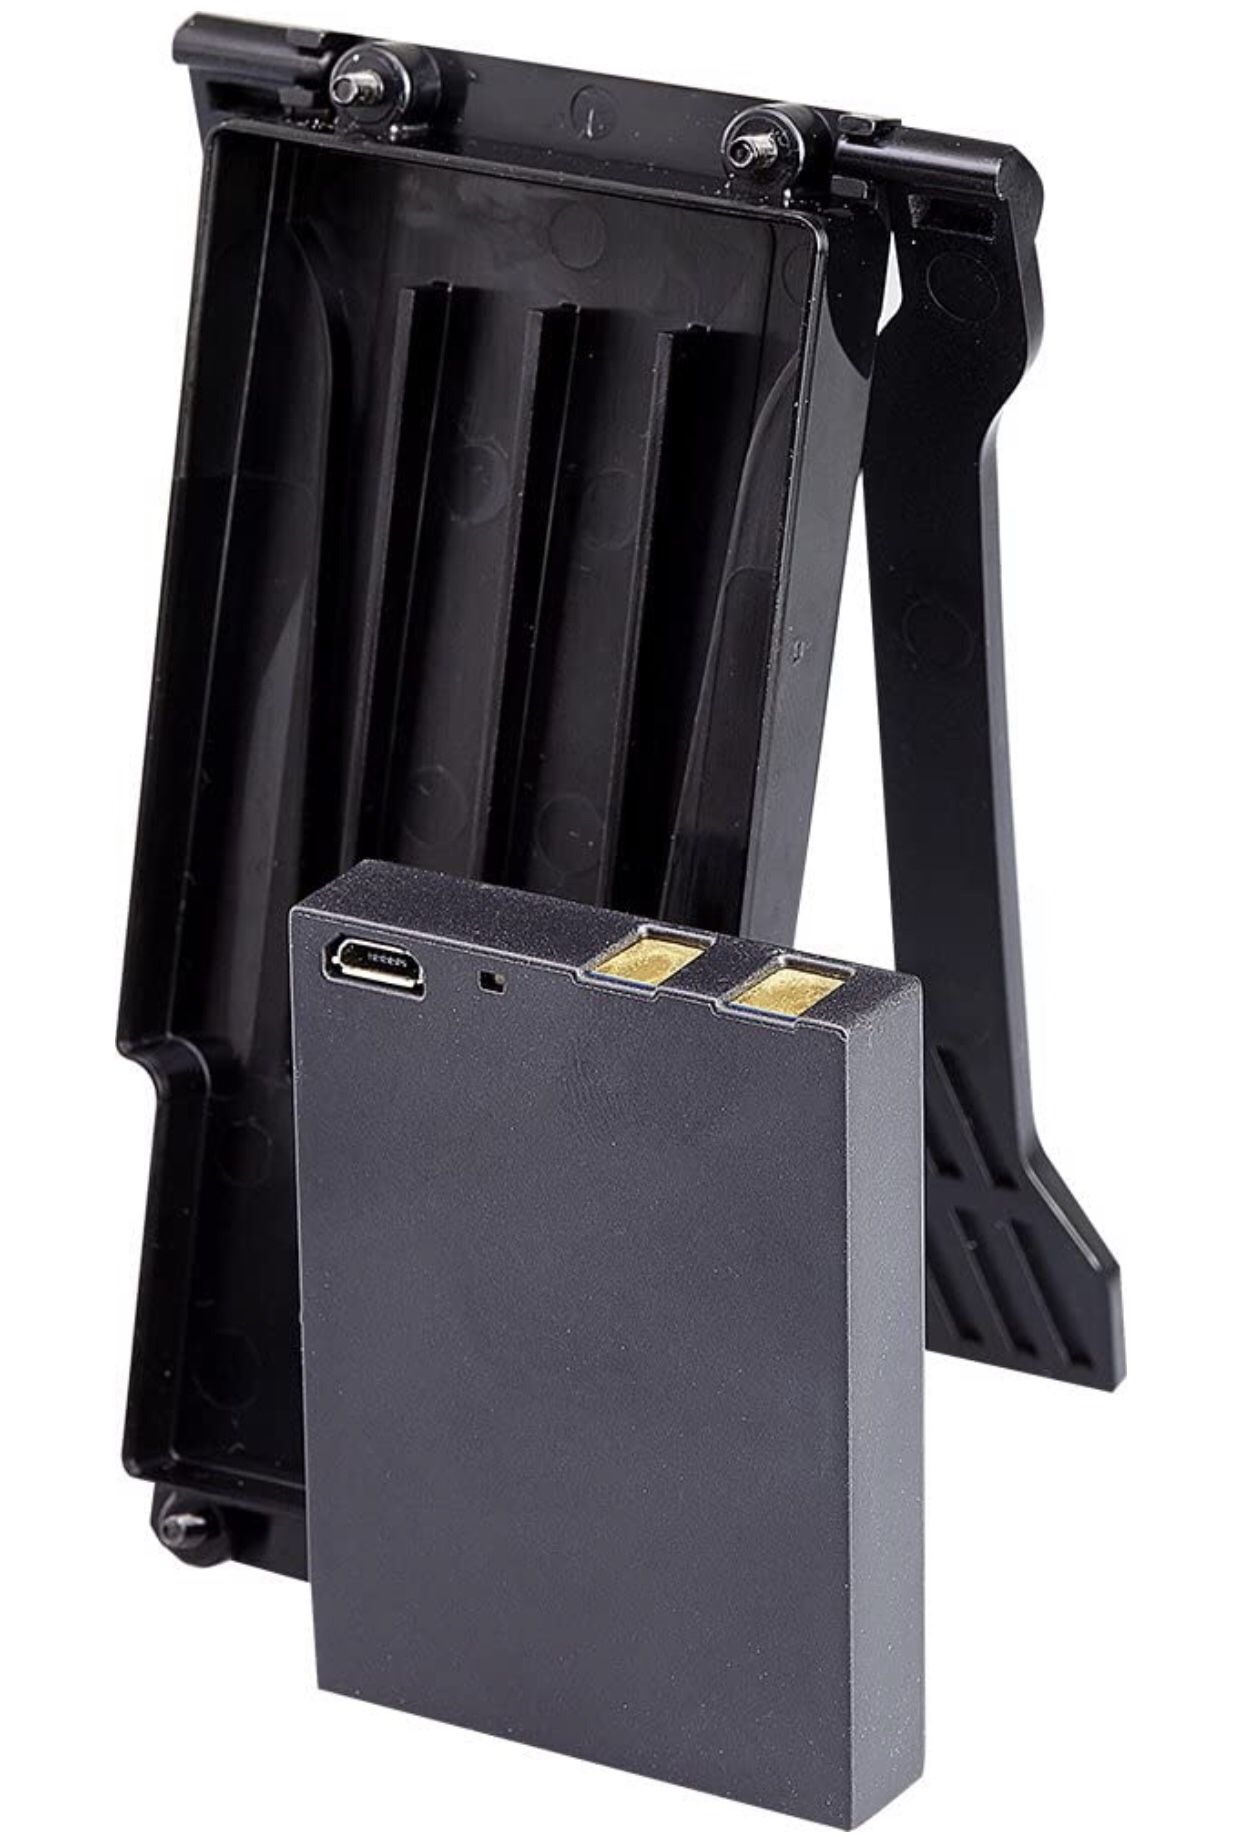 FLIR TA04-KIT Rechargeable Battery Kit for DM284